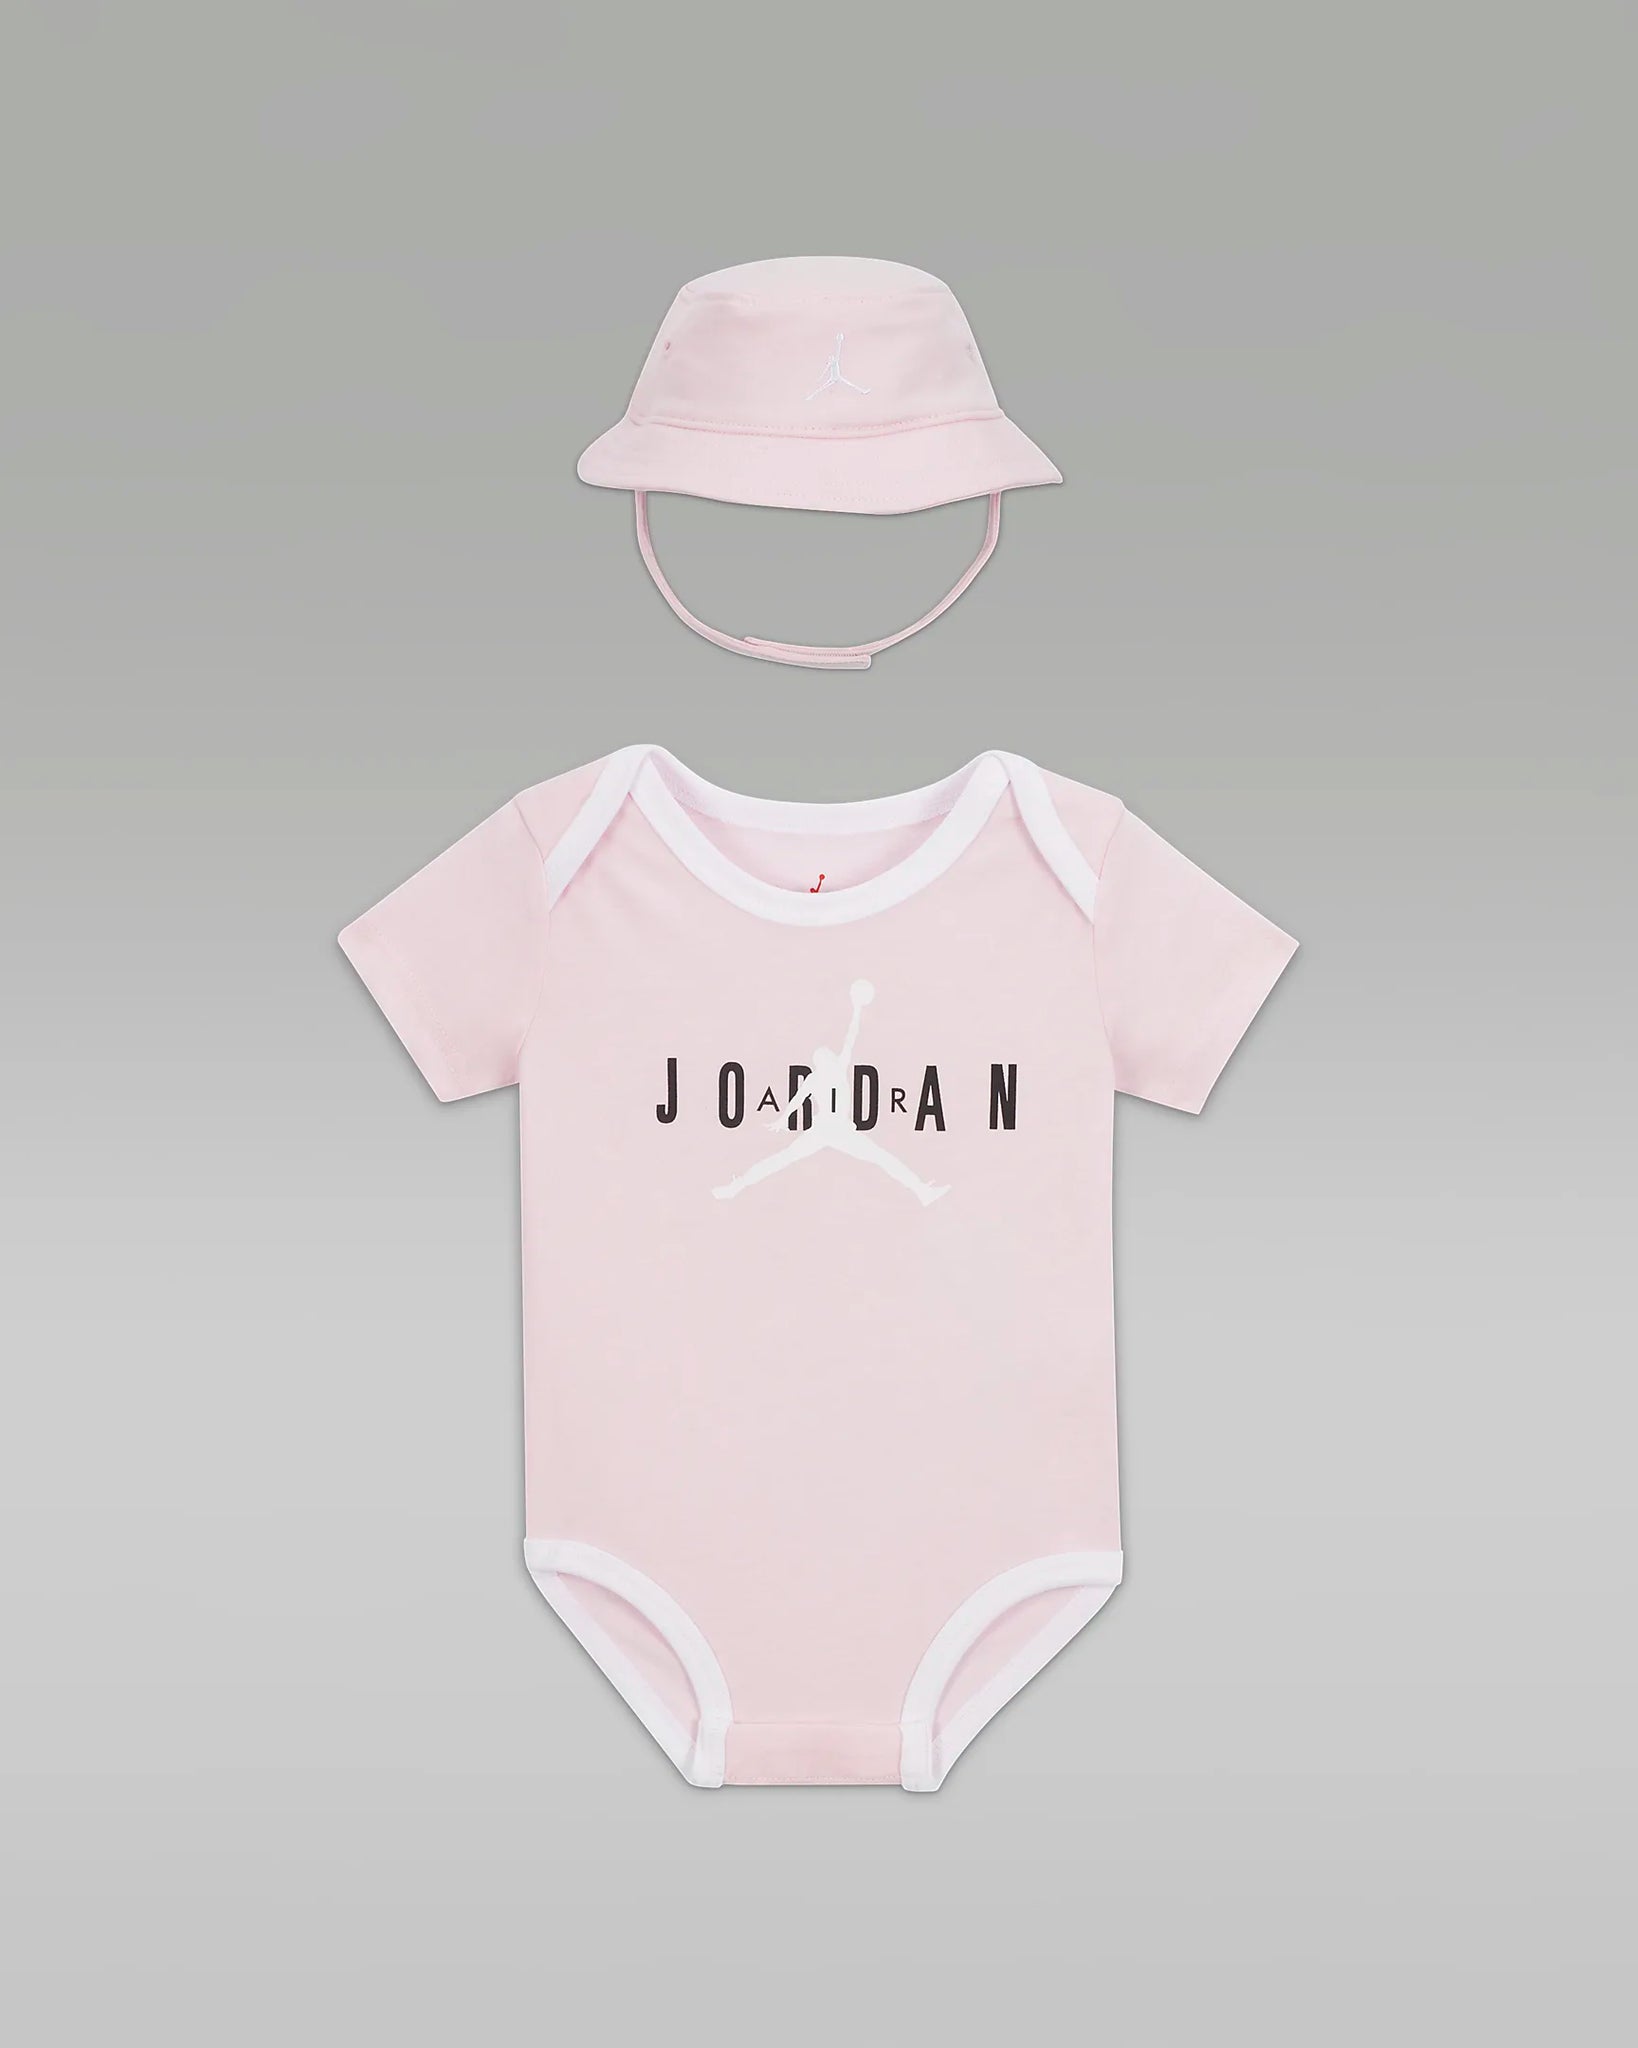 Jordan ensemble bob et body bébé "Pink"